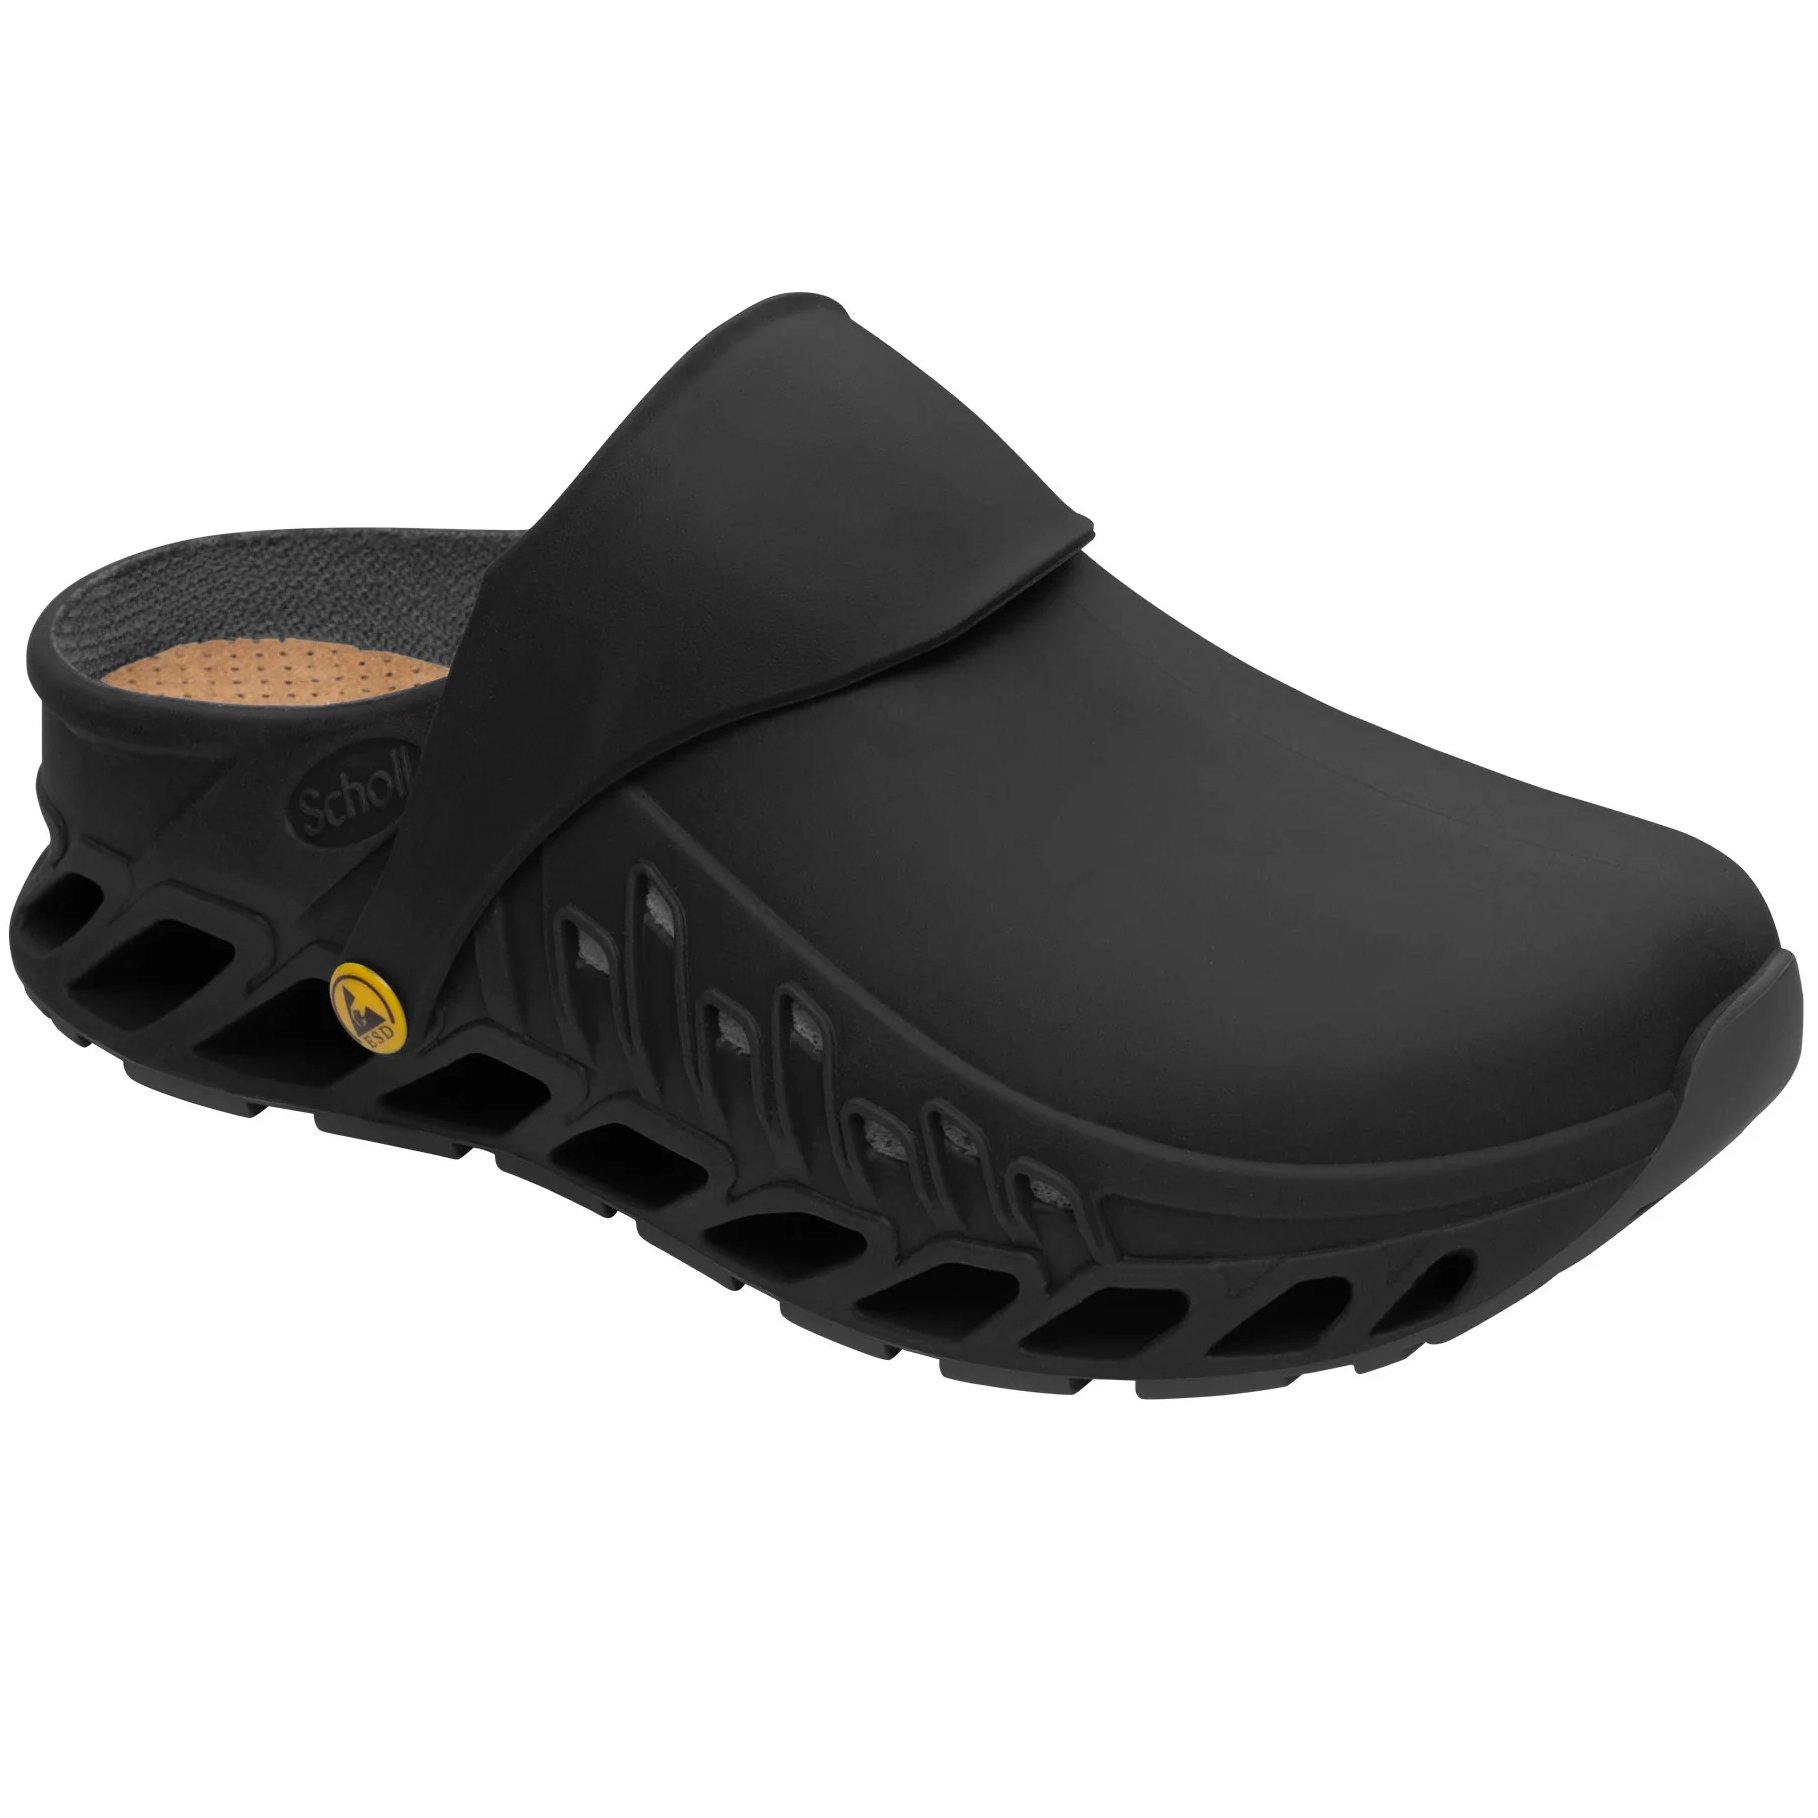 Scholl Shoes Evoflex F293781004 Ανδρικά Καλοκαιρινά Ανατομικά Παπούτσια, Χαρίζουν Σωστή Στάση & Φυσικό Χωρίς Πόνο Βάδισμα Black 1 Ζευγάρι - 40